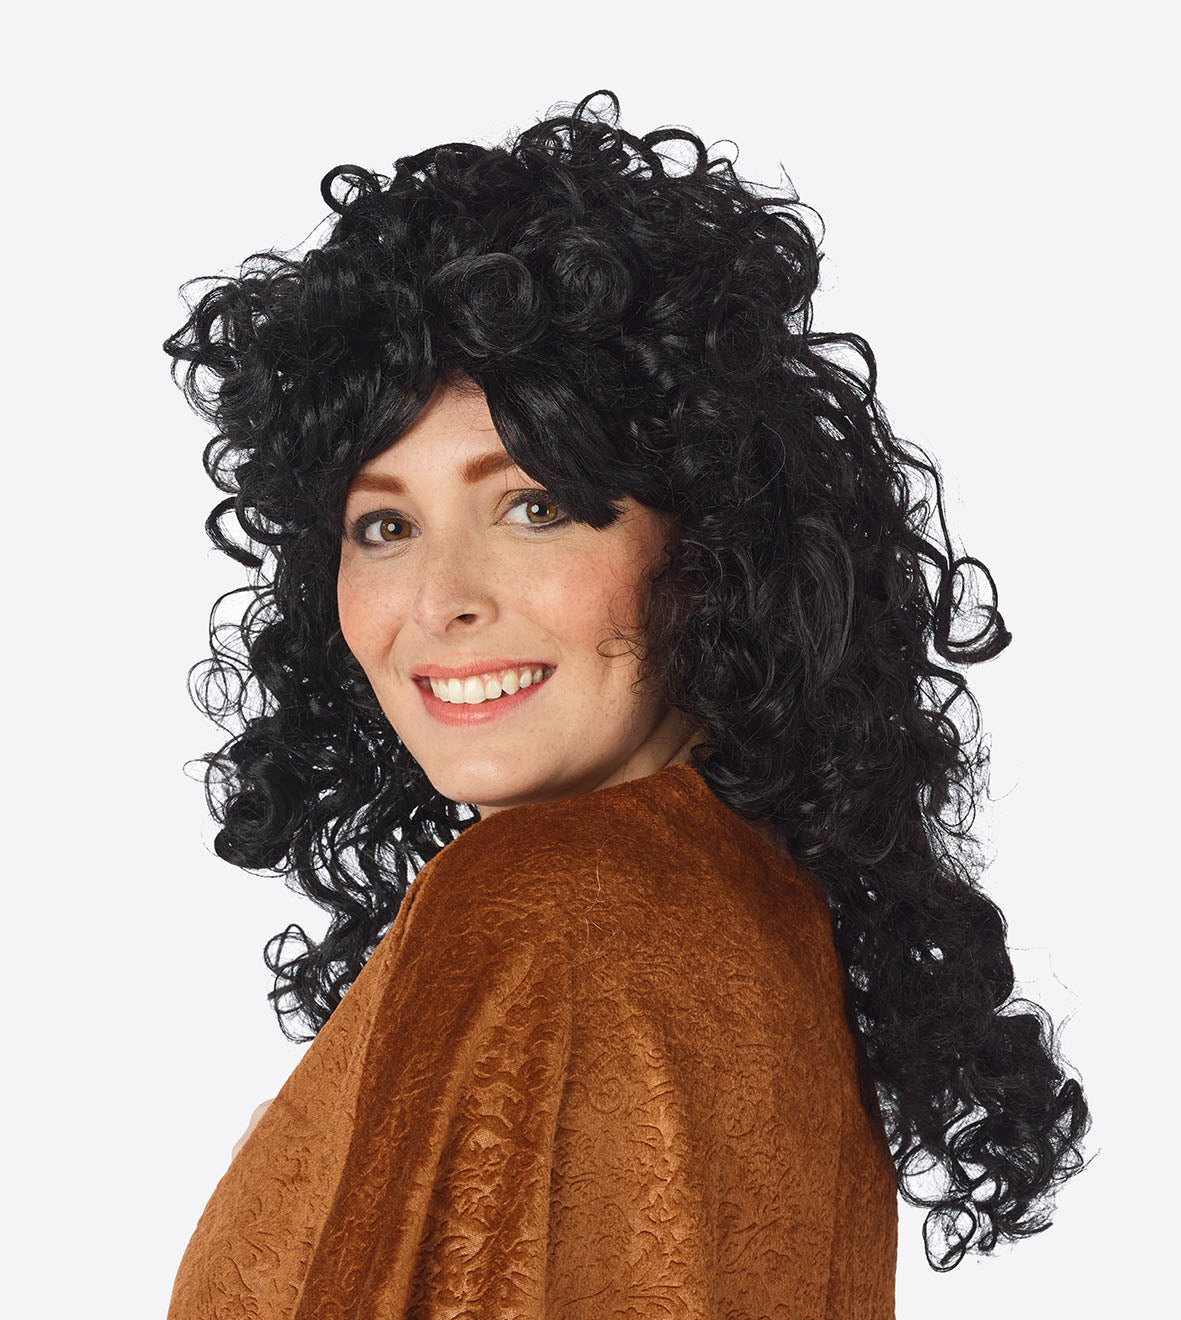 Pruik Cher - pruik met lange krullen